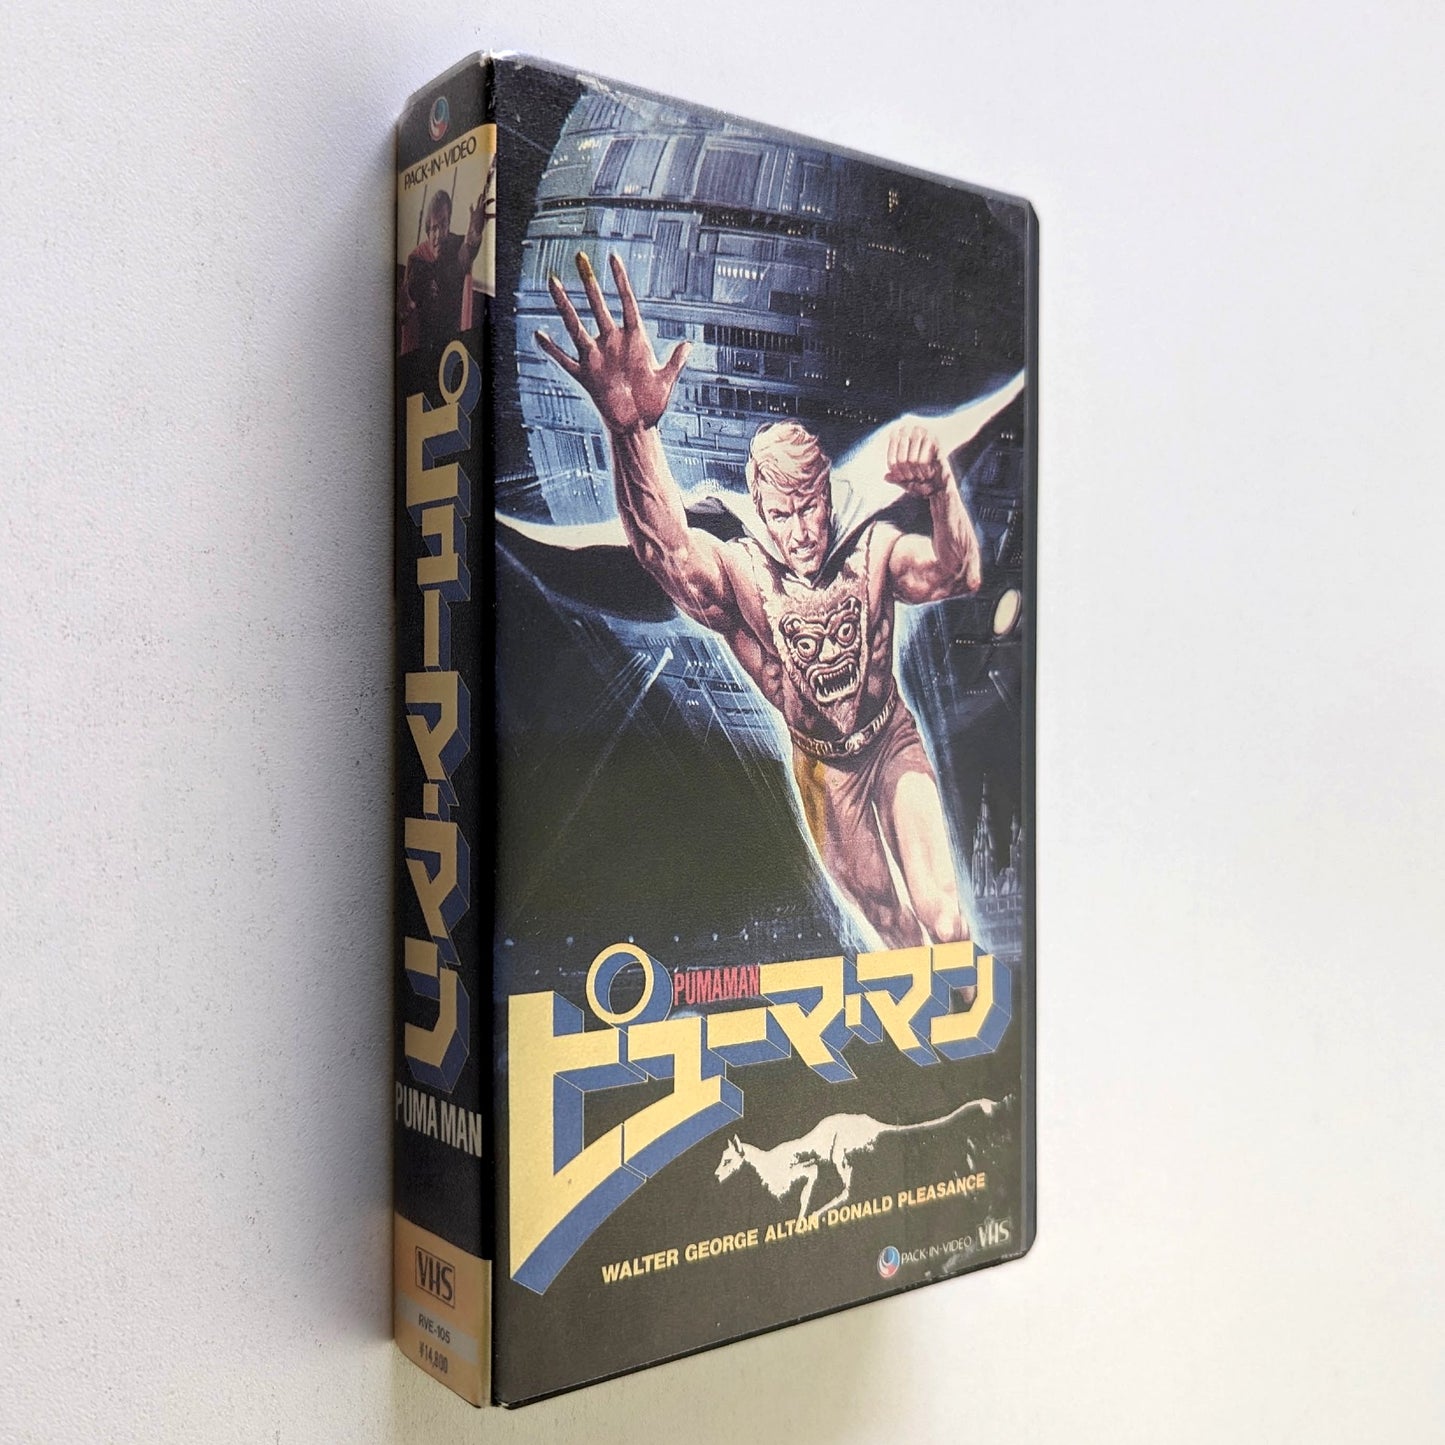 Puma Man, The (1980) Japanese VHS